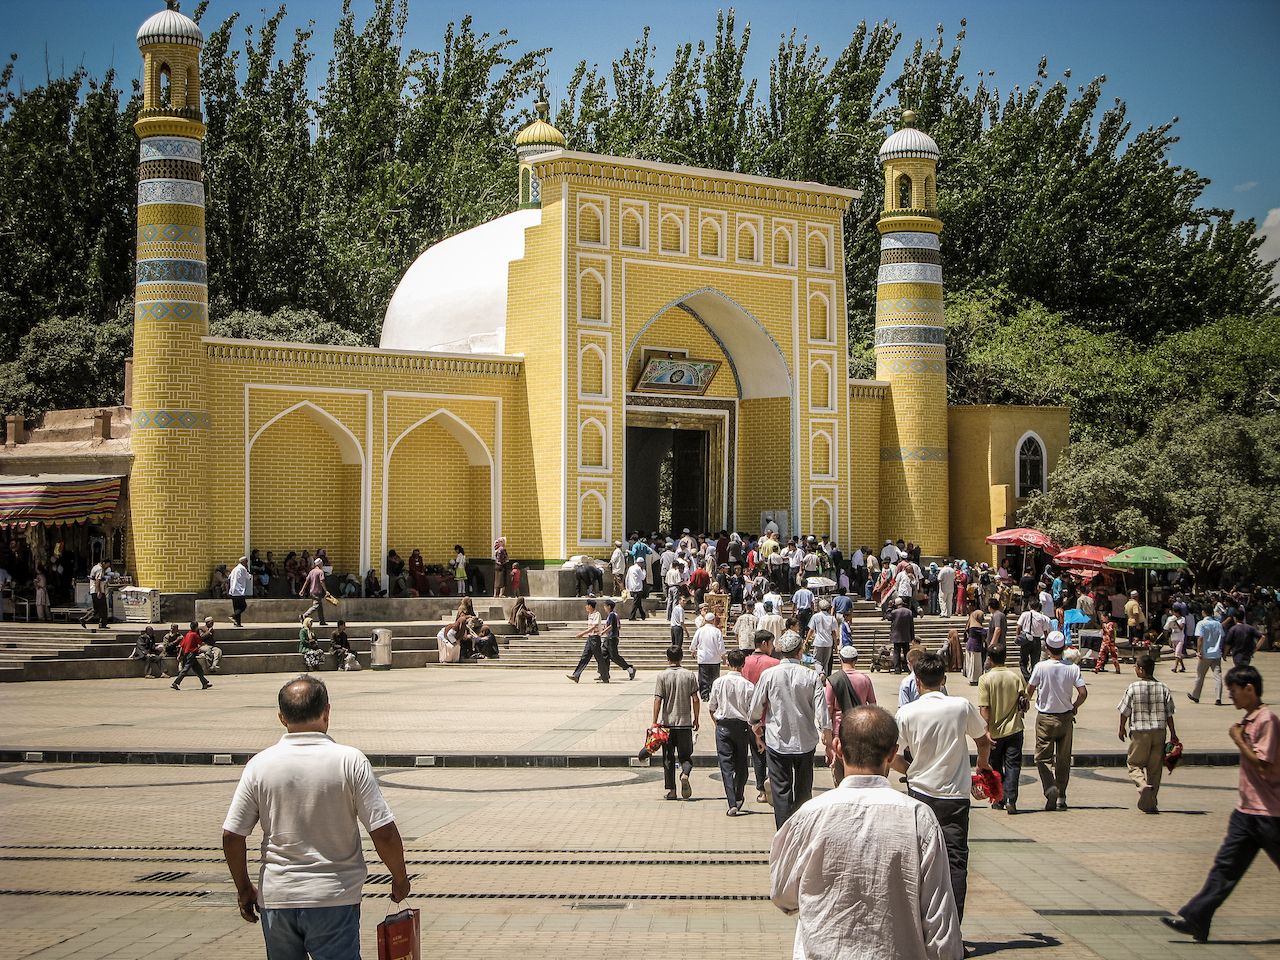 Id Kah Mosque, Kashgar, Xinjiang, China